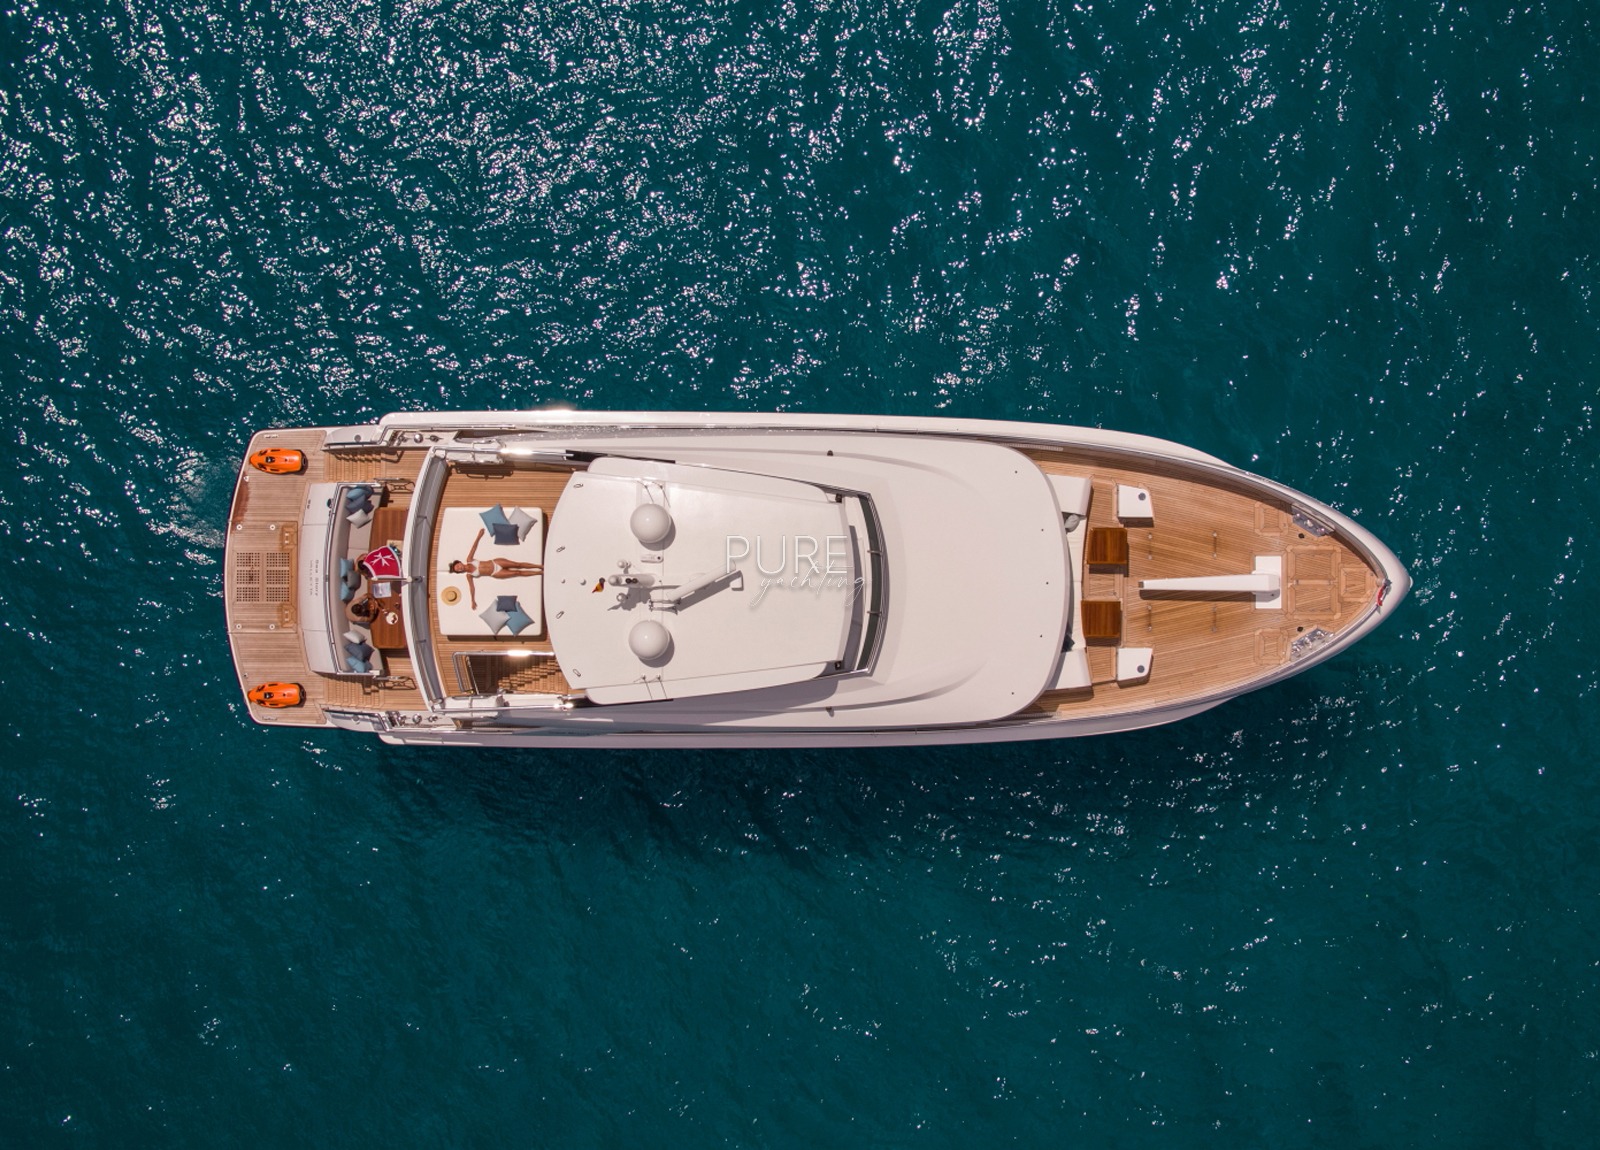 luxusyacht vanquish 82 sea story balearic islands charter